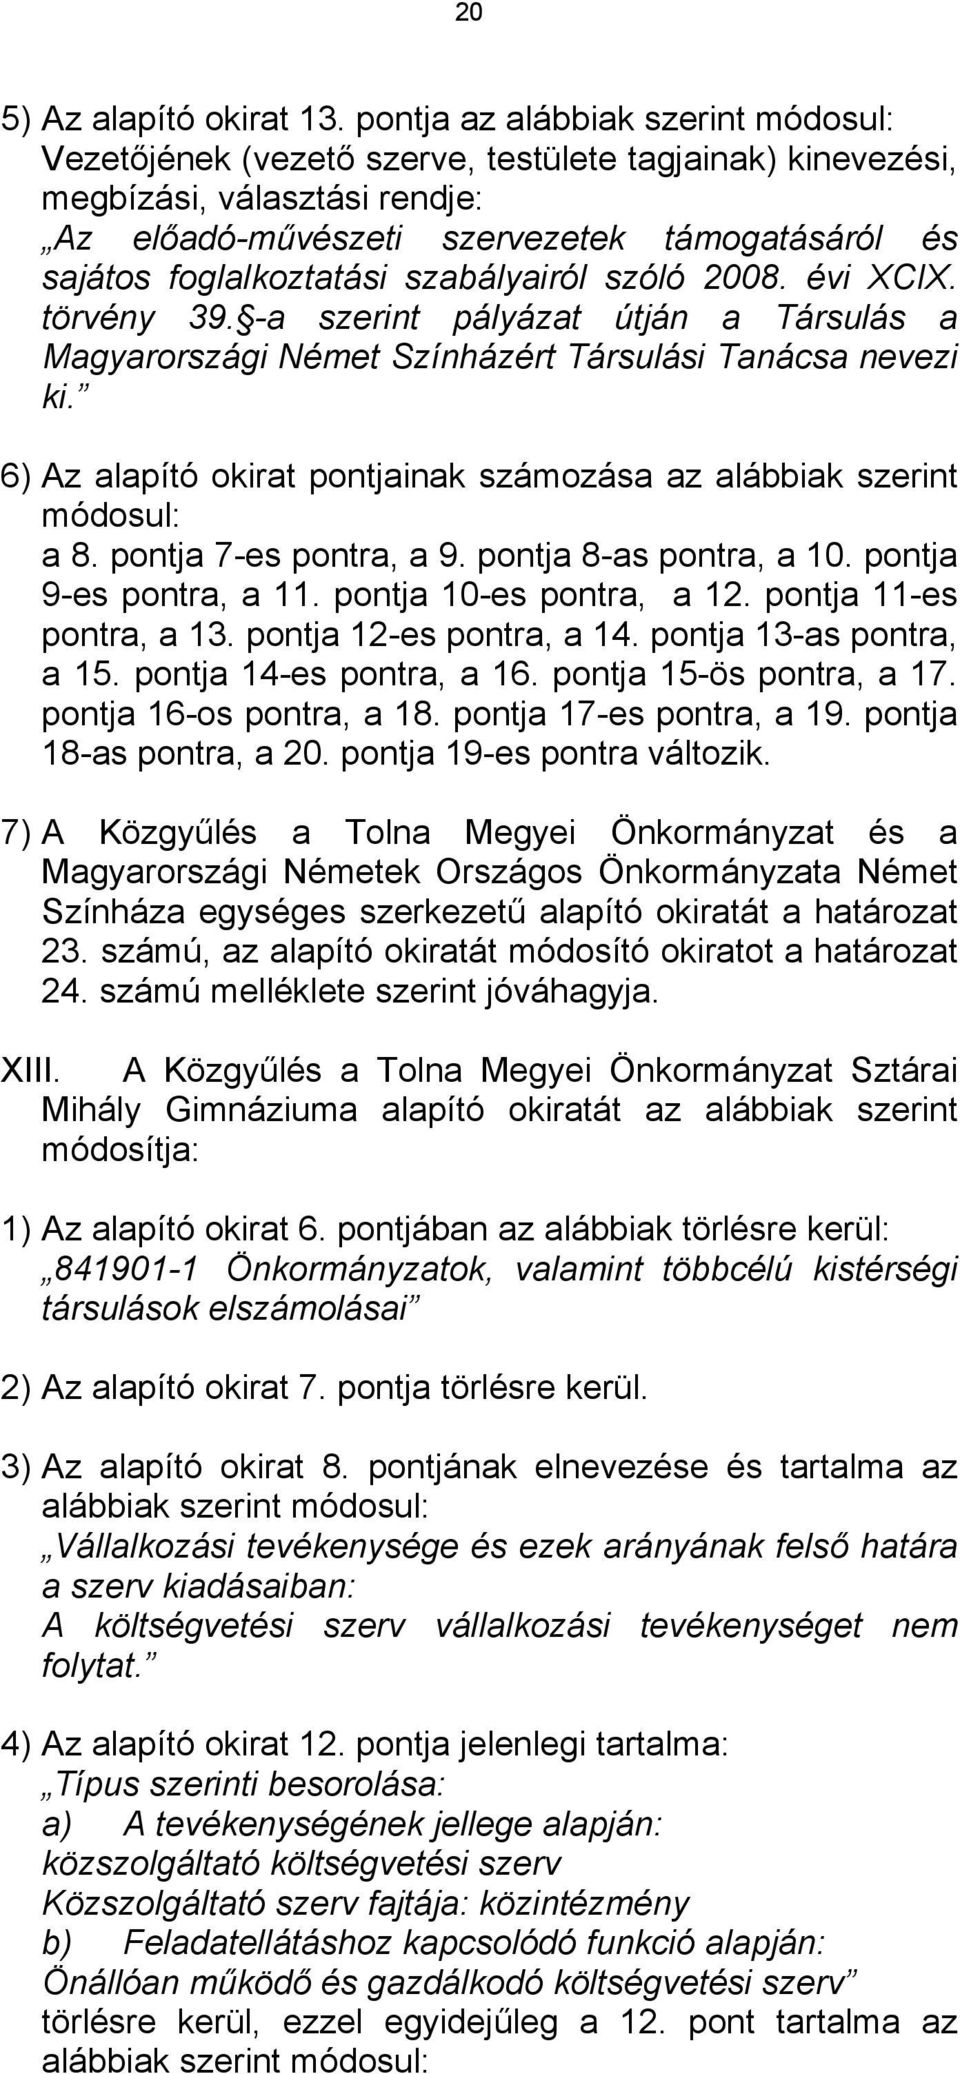 szabályairól szóló 2008. évi XCIX. törvény 39. -a szerint pályázat útján a Társulás a Magyarországi Német Színházért Társulási Tanácsa nevezi ki.